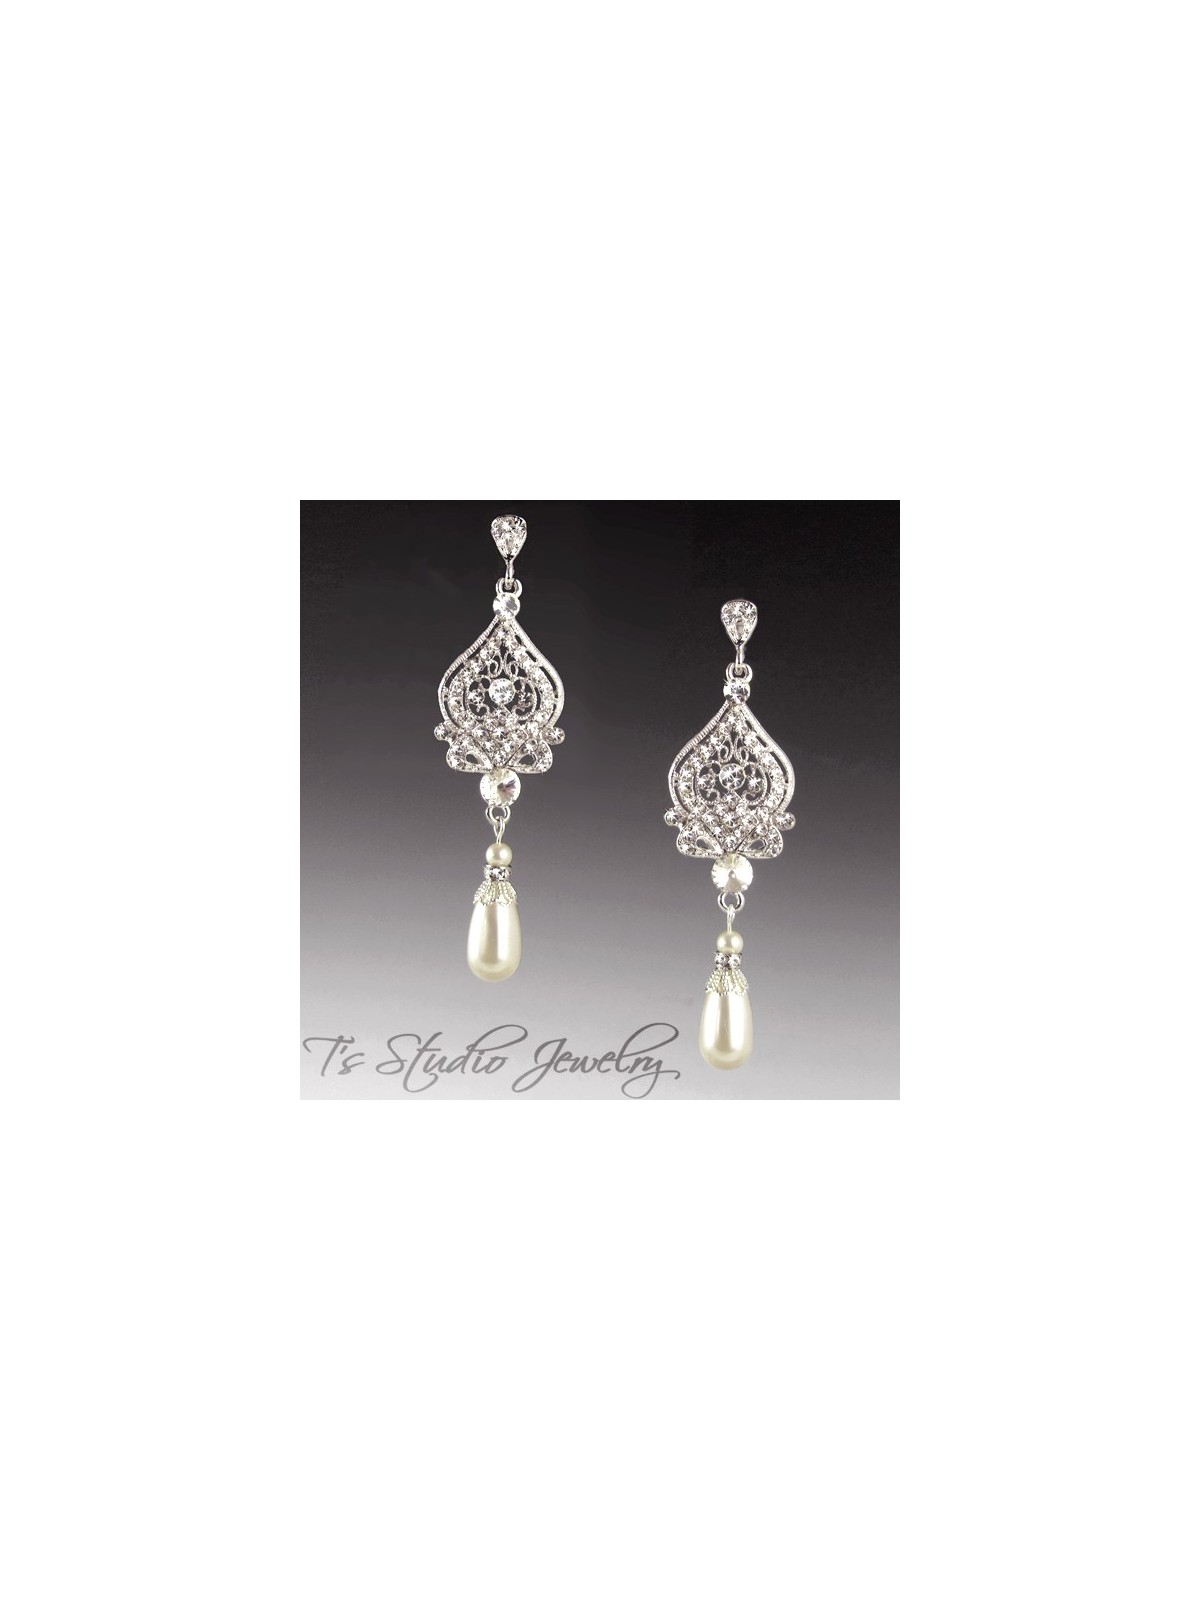 Wedding Pearl & Crystal Chandelier Earrings